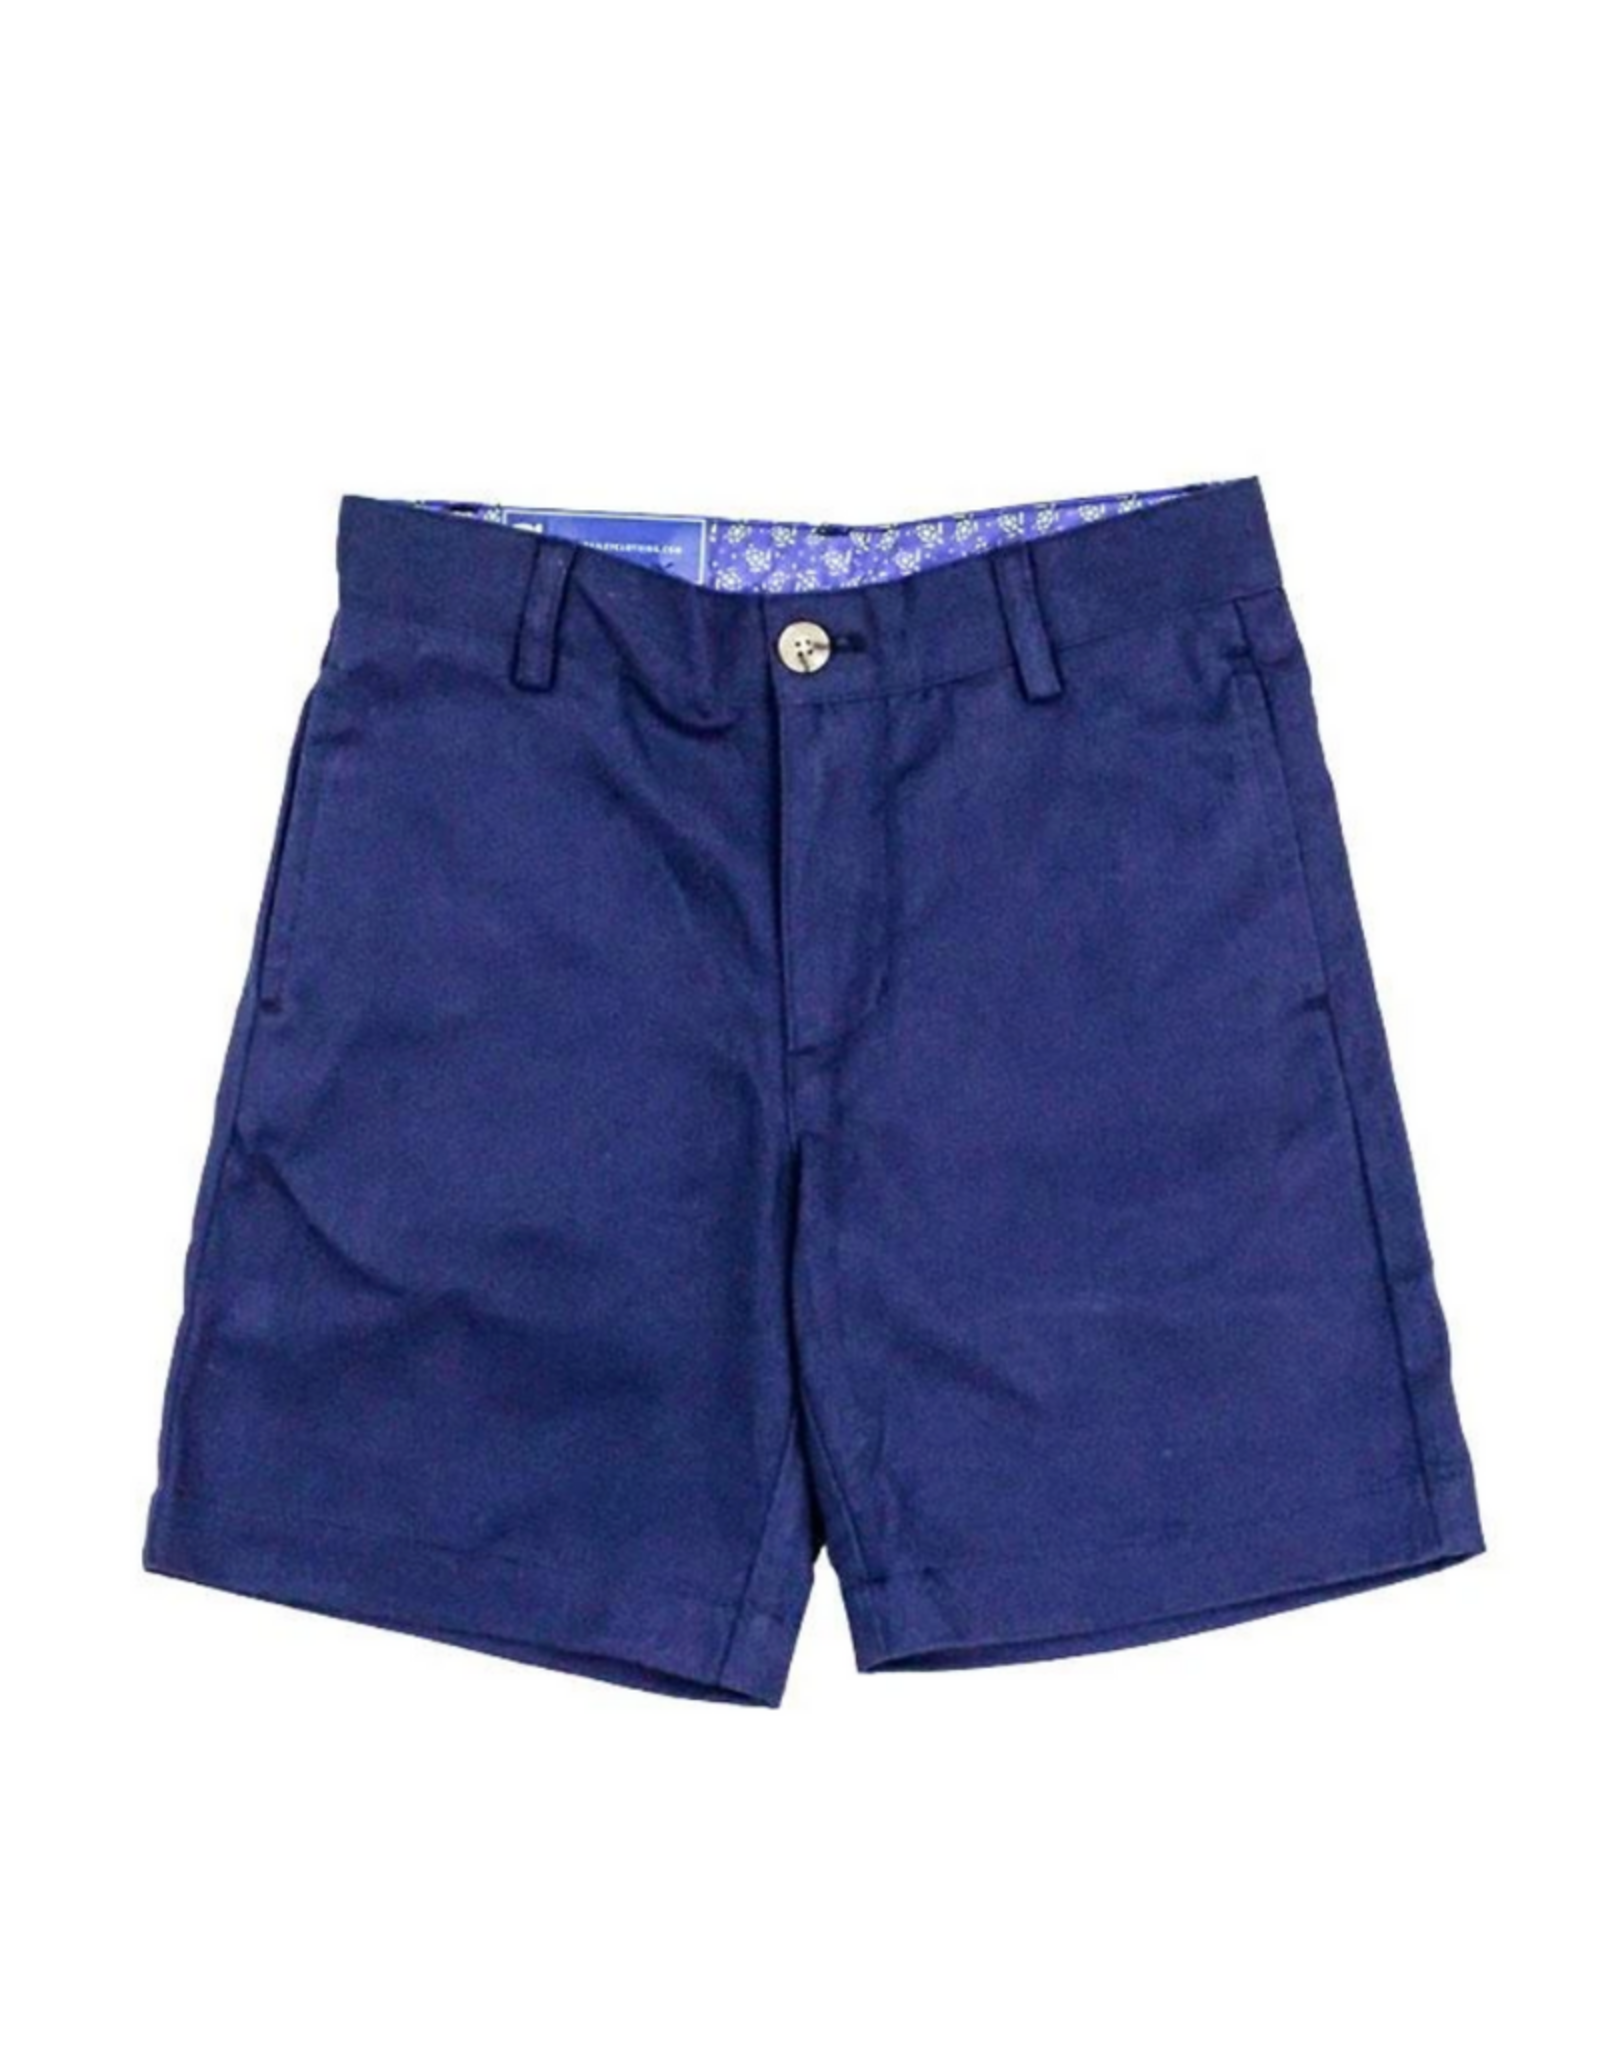 The Bailey Boys Navy Twill Shorts